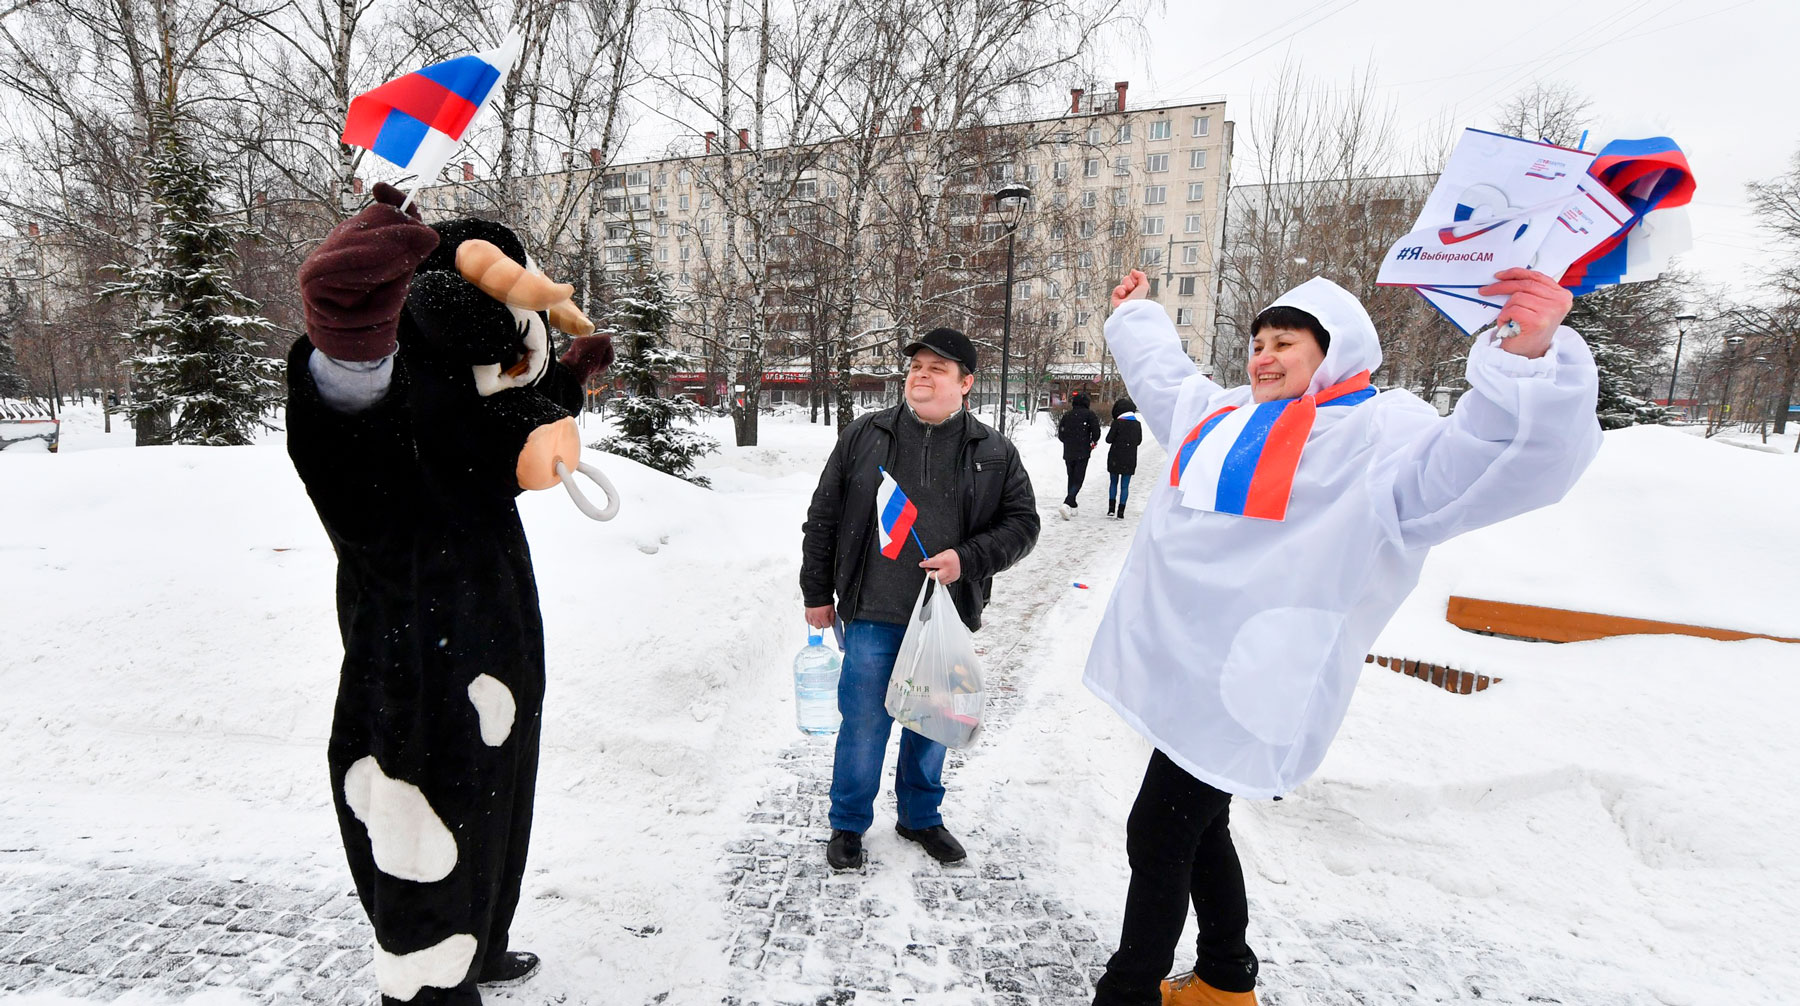 Как власти завлекают электорат на избирательные участки Фото: © Агентство Москва/Киселев Сергей